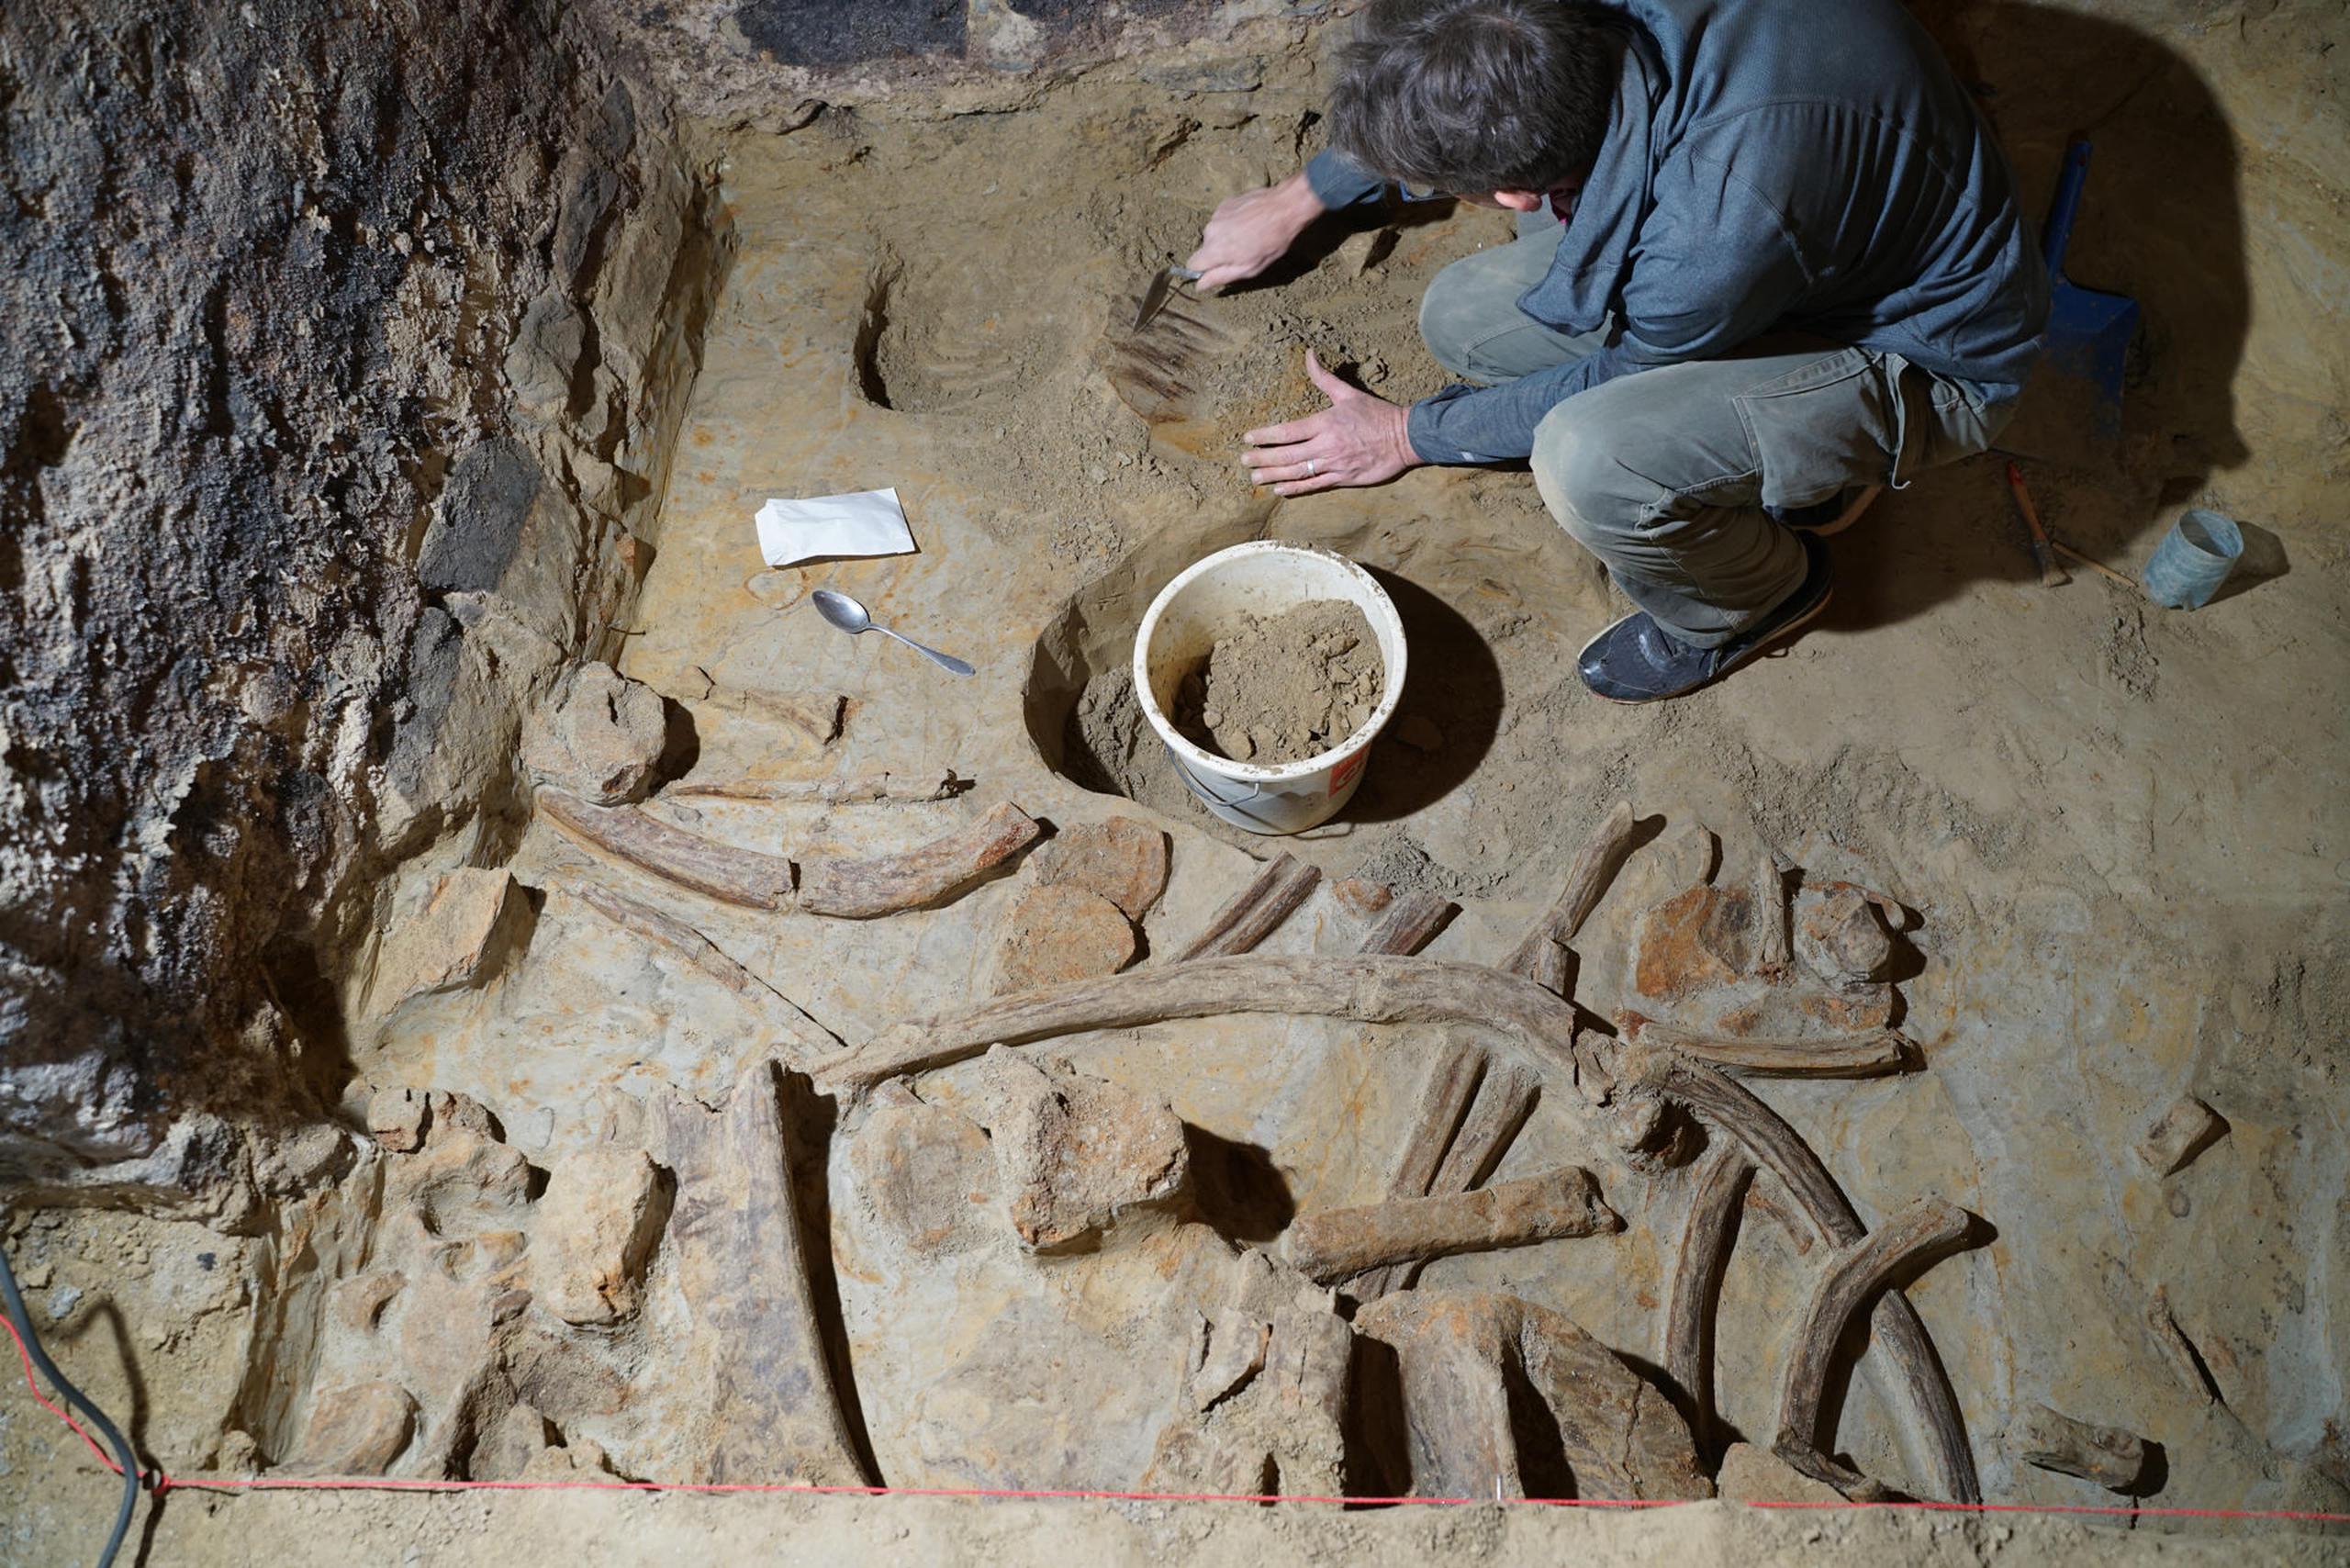 Expertos del Instituto Arqueológico Austriaco trabajaron en la extracción y análisis de los huesos encontrados en una bodega subterránea a unos 75 kilómetros de Viena.